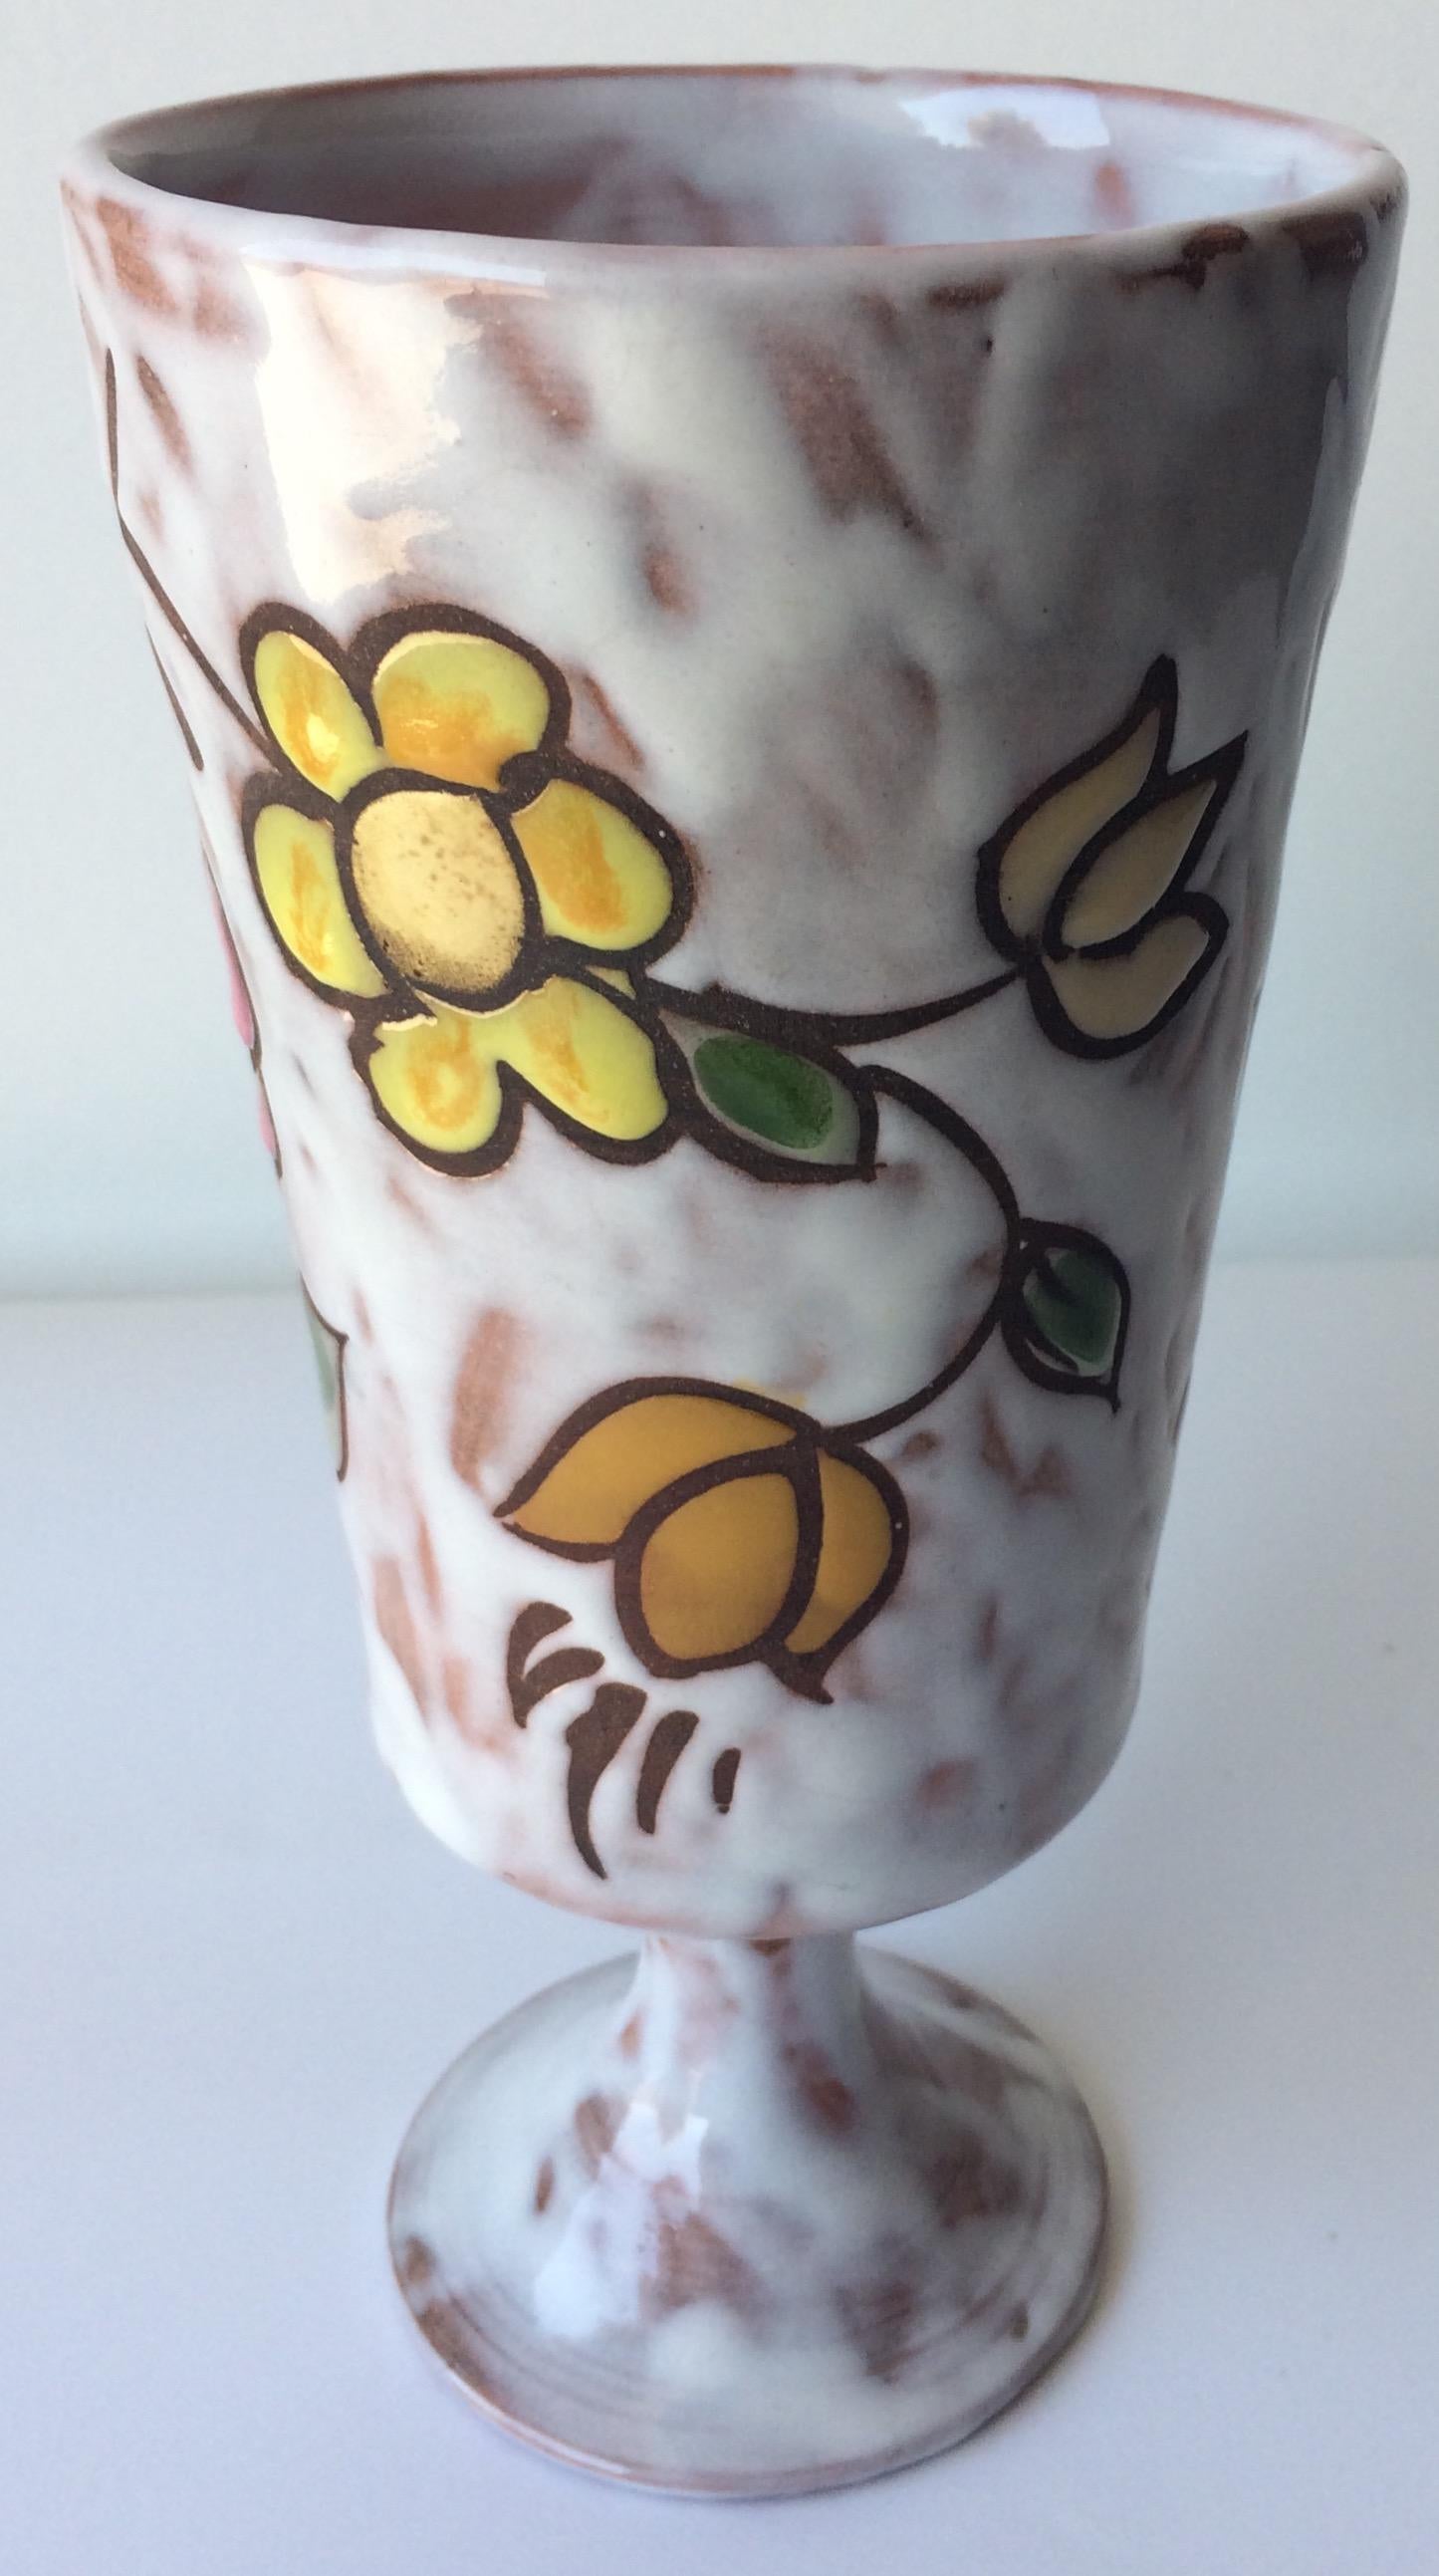 Vase en céramique français du milieu du siècle, peint à la main et fabriqué à la main. 

Magnifiquement décorée de motifs floraux et émaillée. 
Signé en bas, Miclay.
 
Mesures : 
Hauteur : 19,5 cm (7,68 in)
Diamètre : 9 cm (3.55 in)
